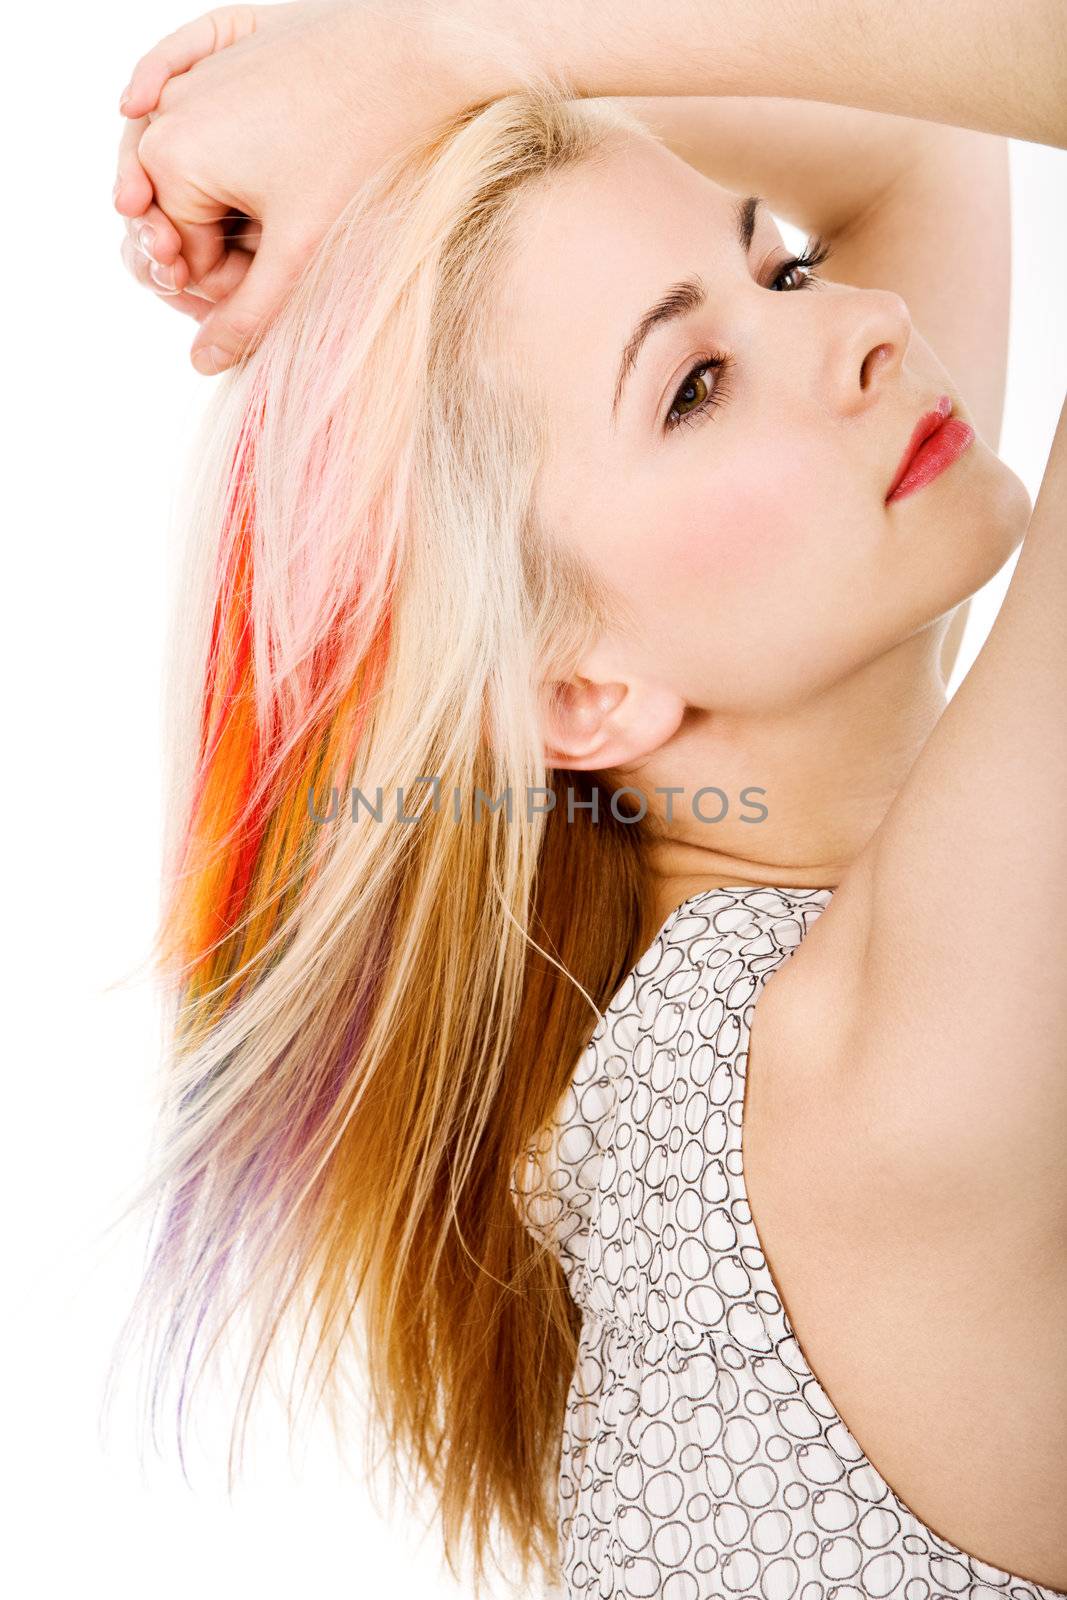 Girl with rainbow haircut by mihhailov